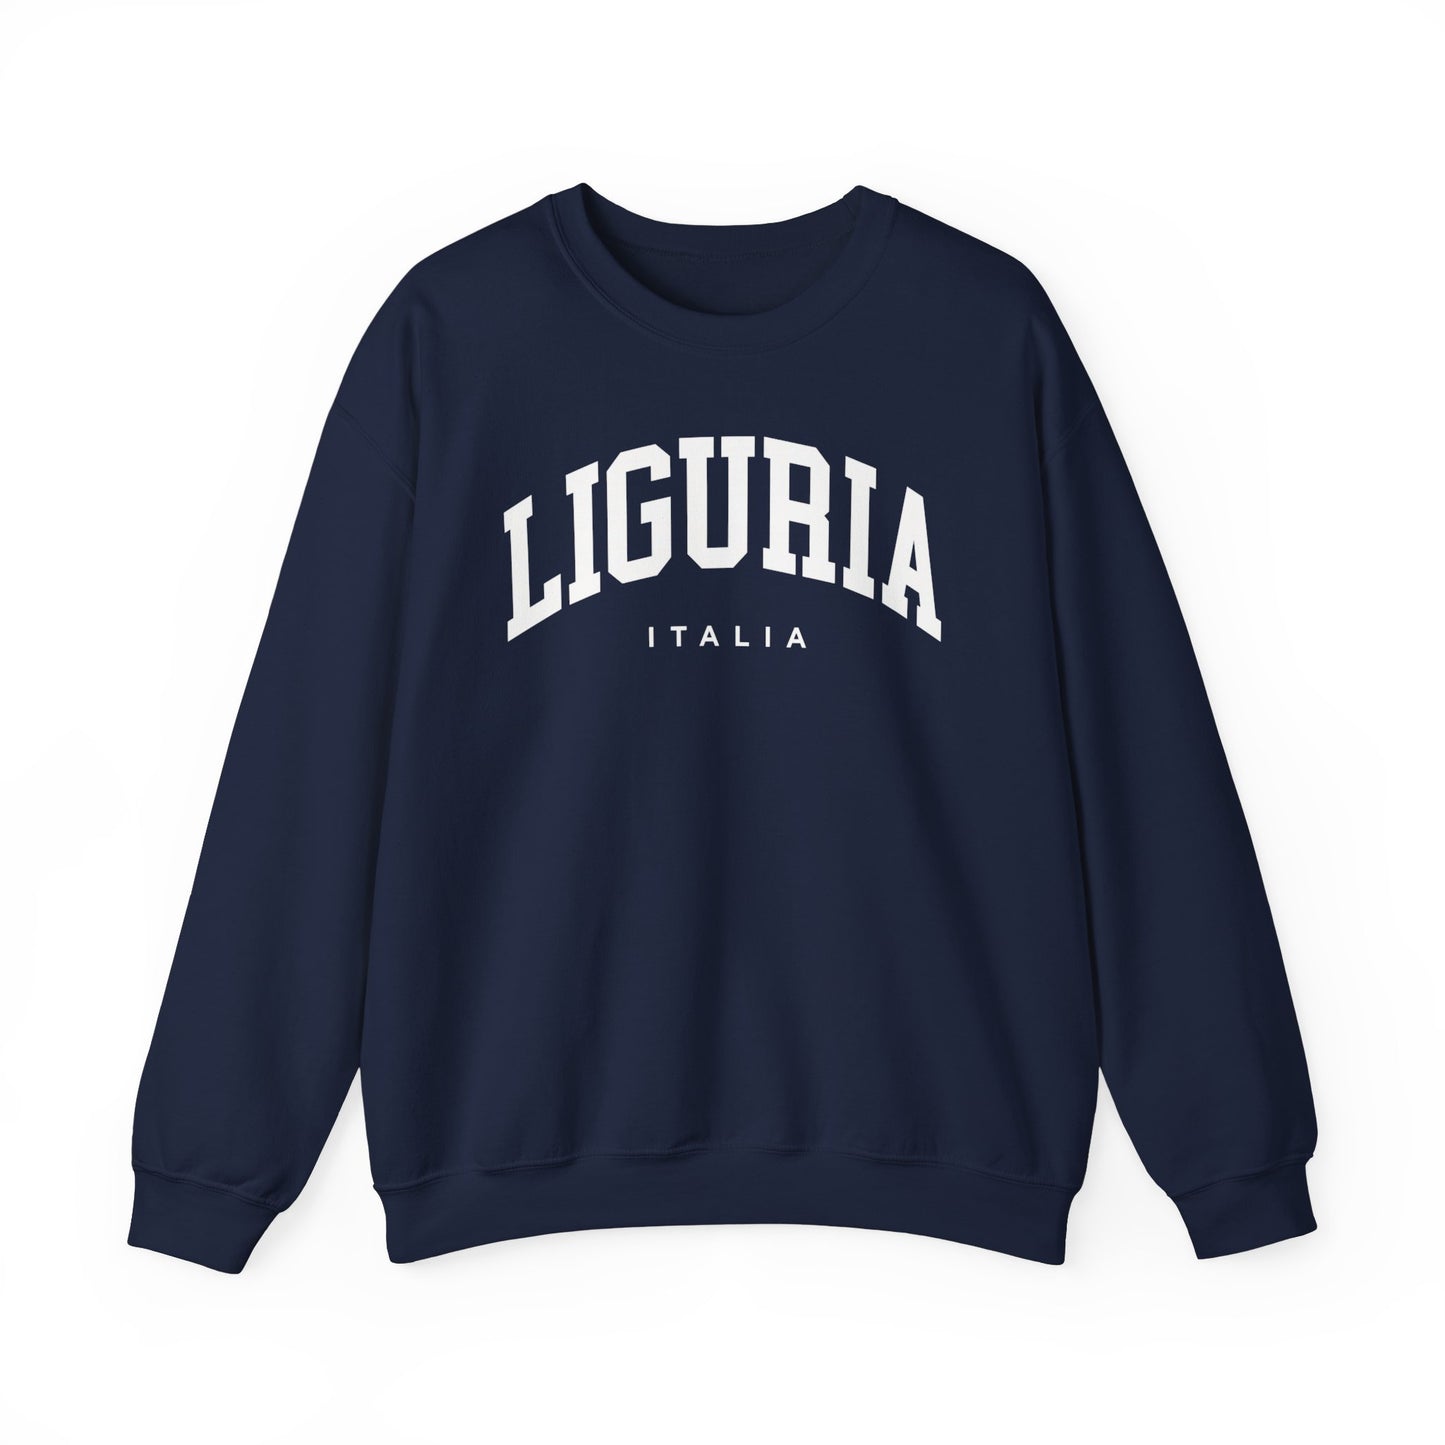 Liguria Italy Sweatshirt